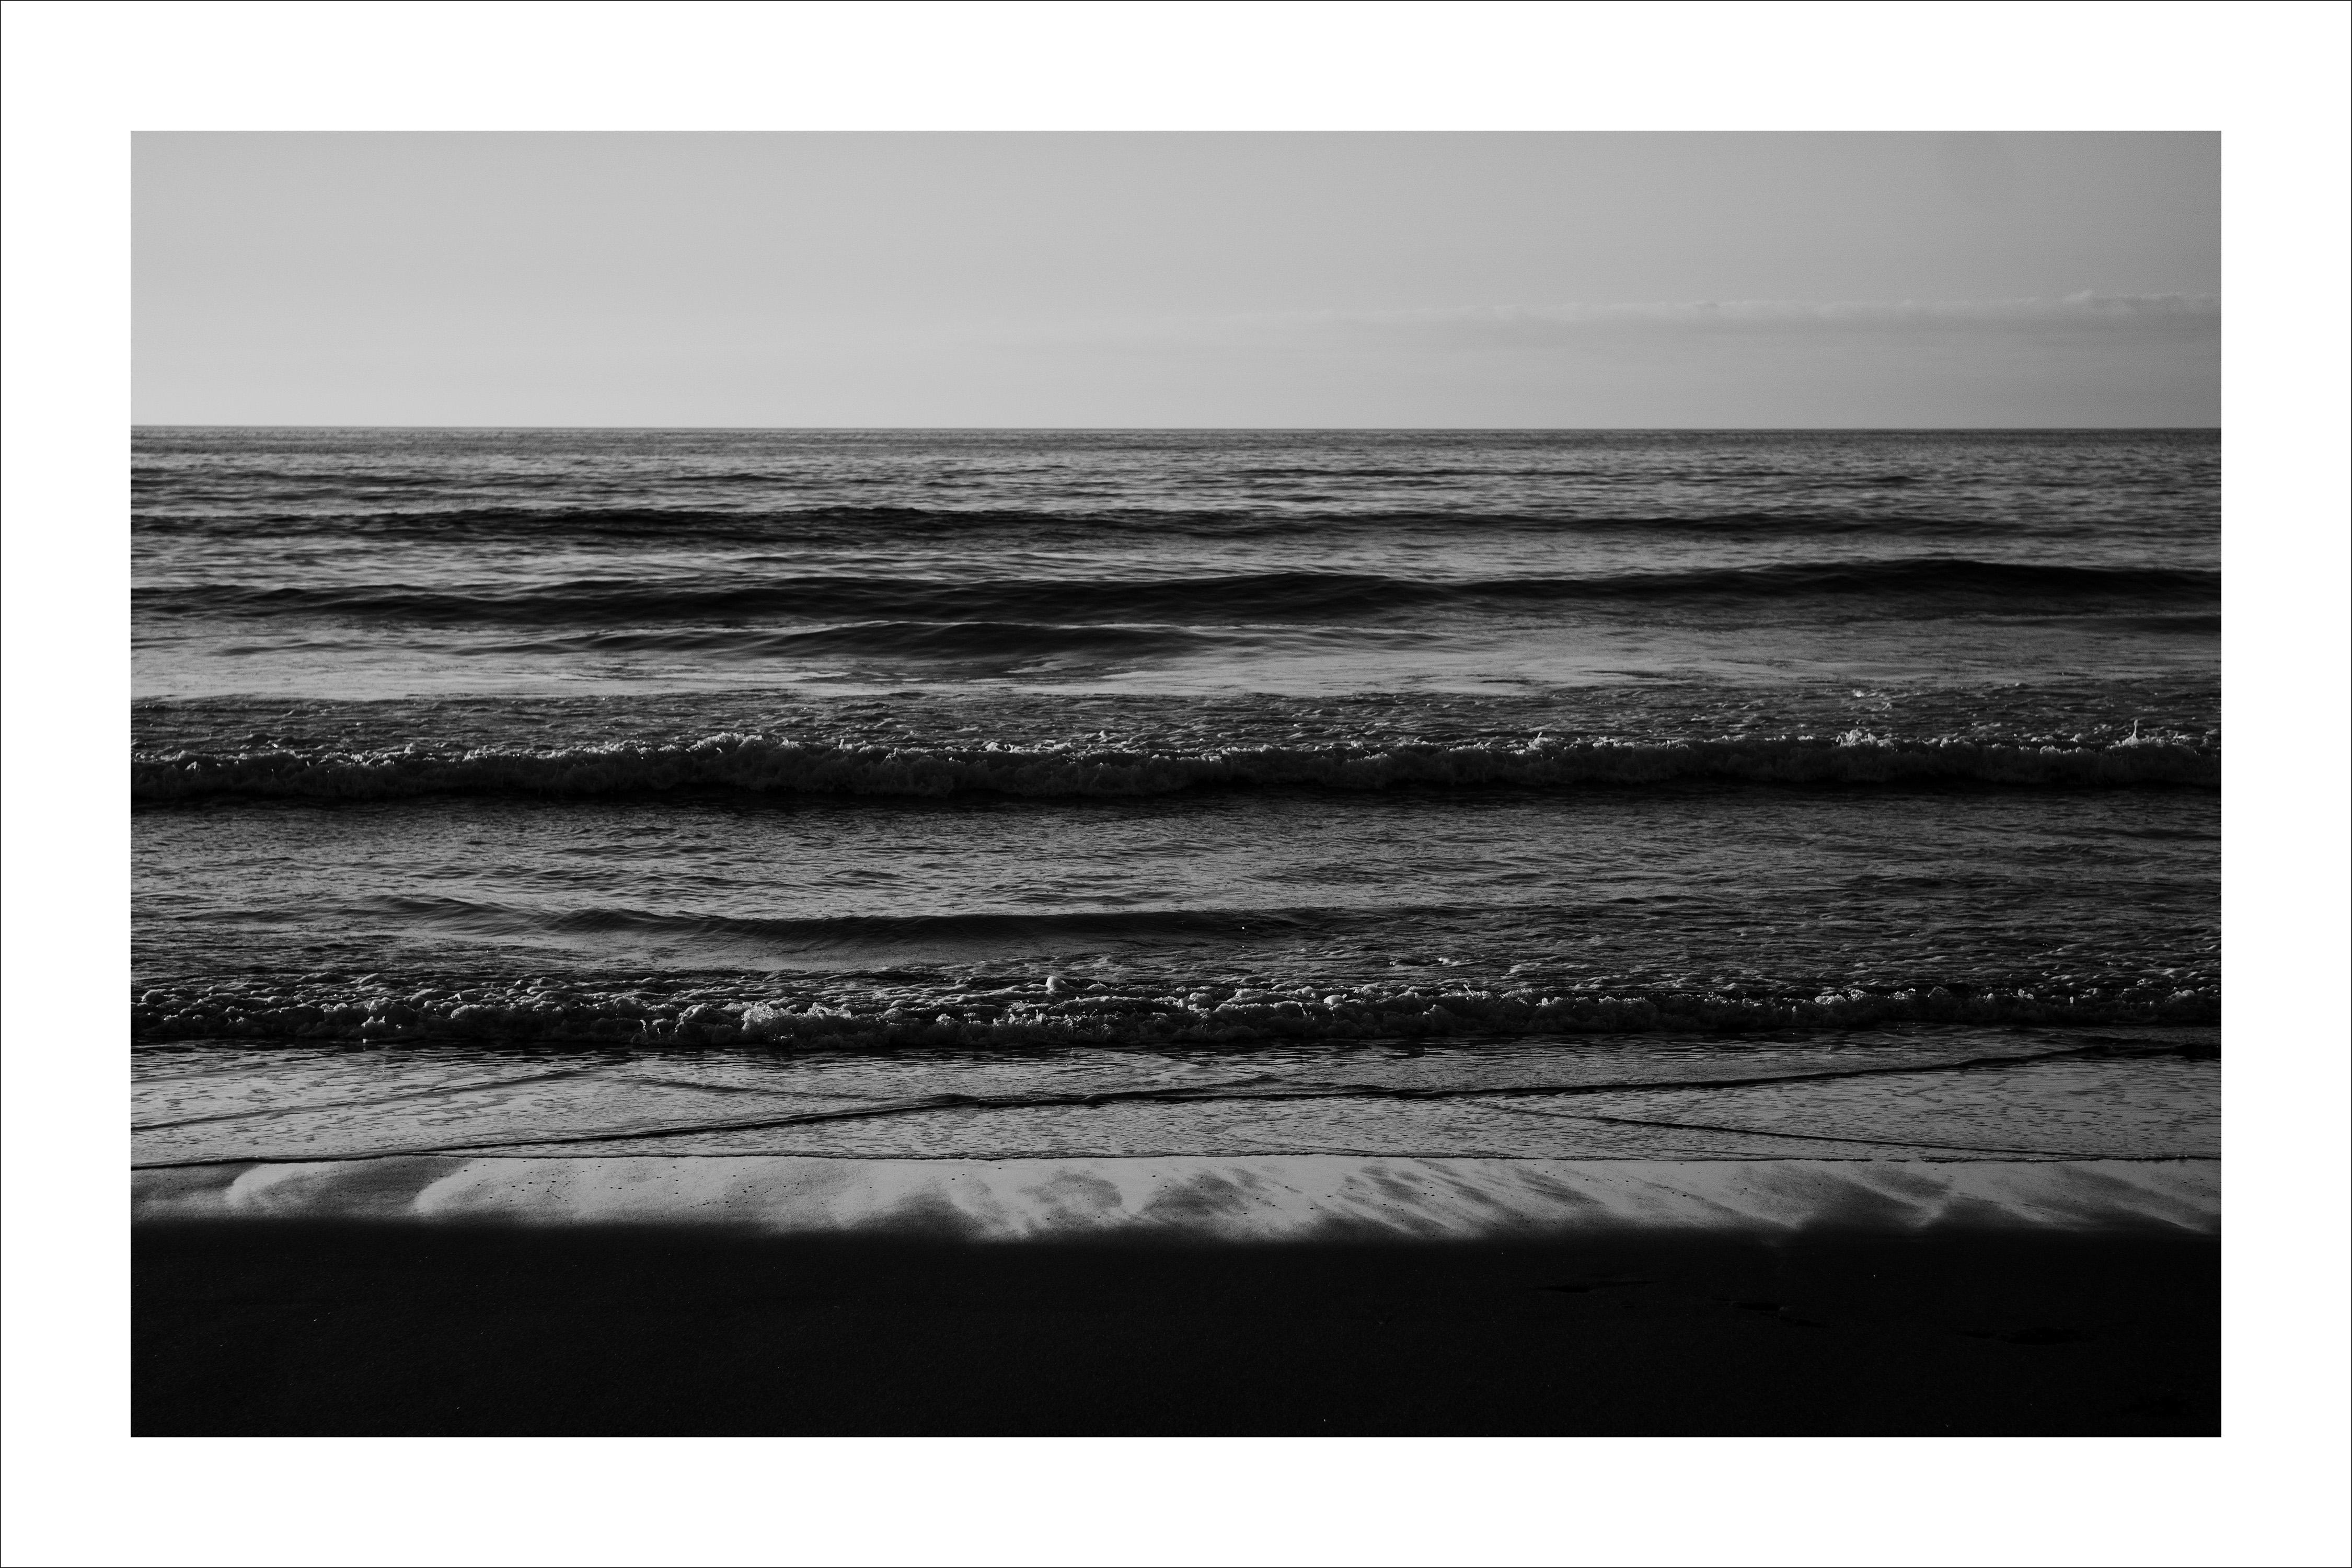 Landscape Photograph Kind of Cyan - Horizon de la plage du Pacifique, coucher de soleil au bord de la mer en noir et blanc, Sugimoto Style Giclée